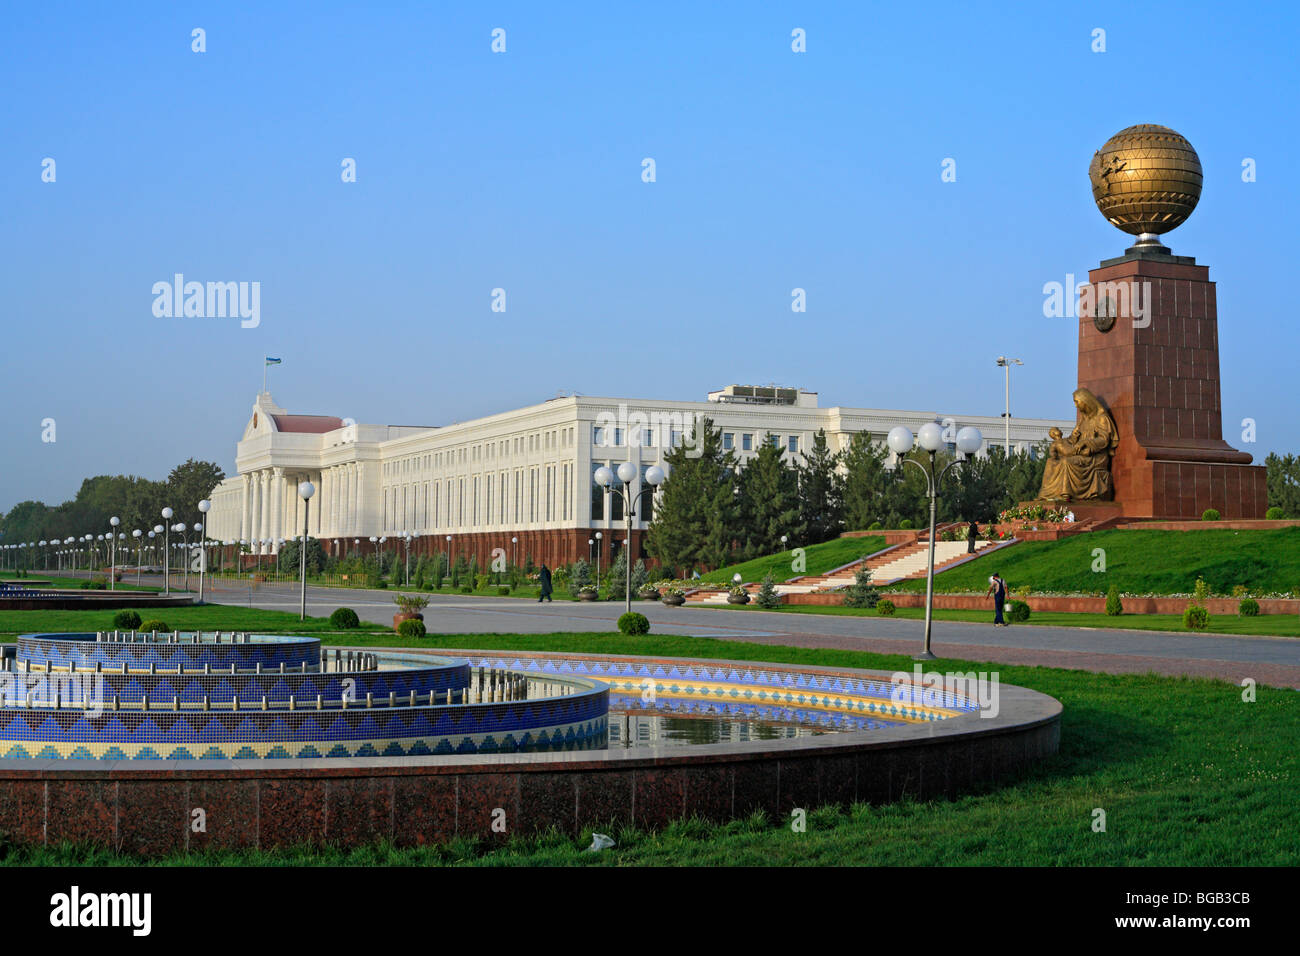 Les bureaux administratifs, la place de l'indépendance, Tachkent, Ouzbékistan Banque D'Images